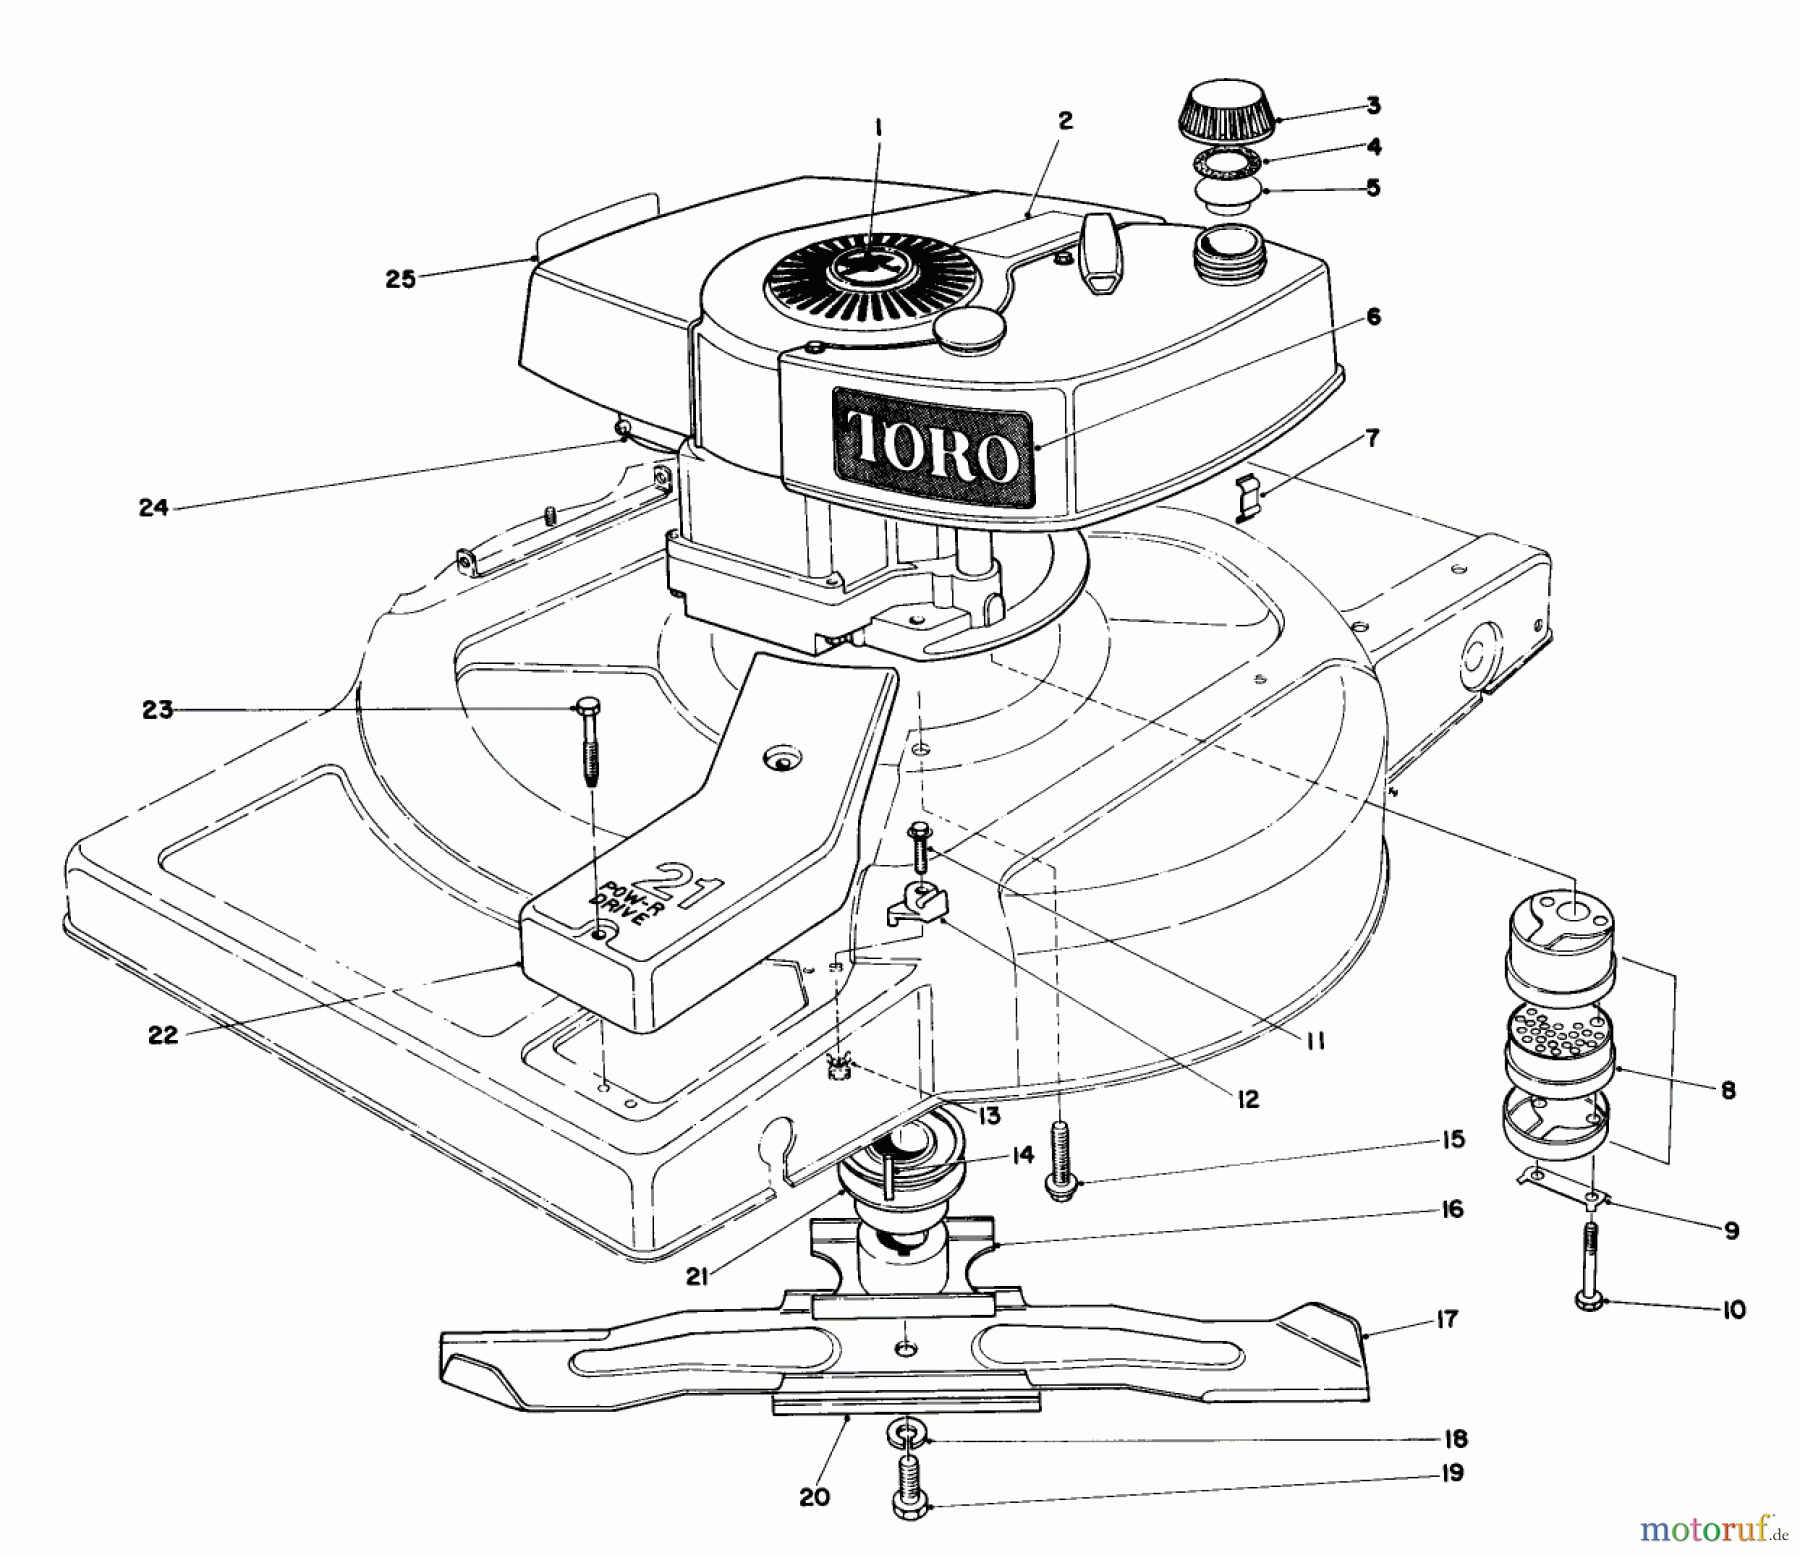  Toro Neu Mowers, Walk-Behind Seite 1 18005 - Toro Lawnmower, 1982 (2000001-2999999) ENGINE ASSEMBLY MODEL 18010